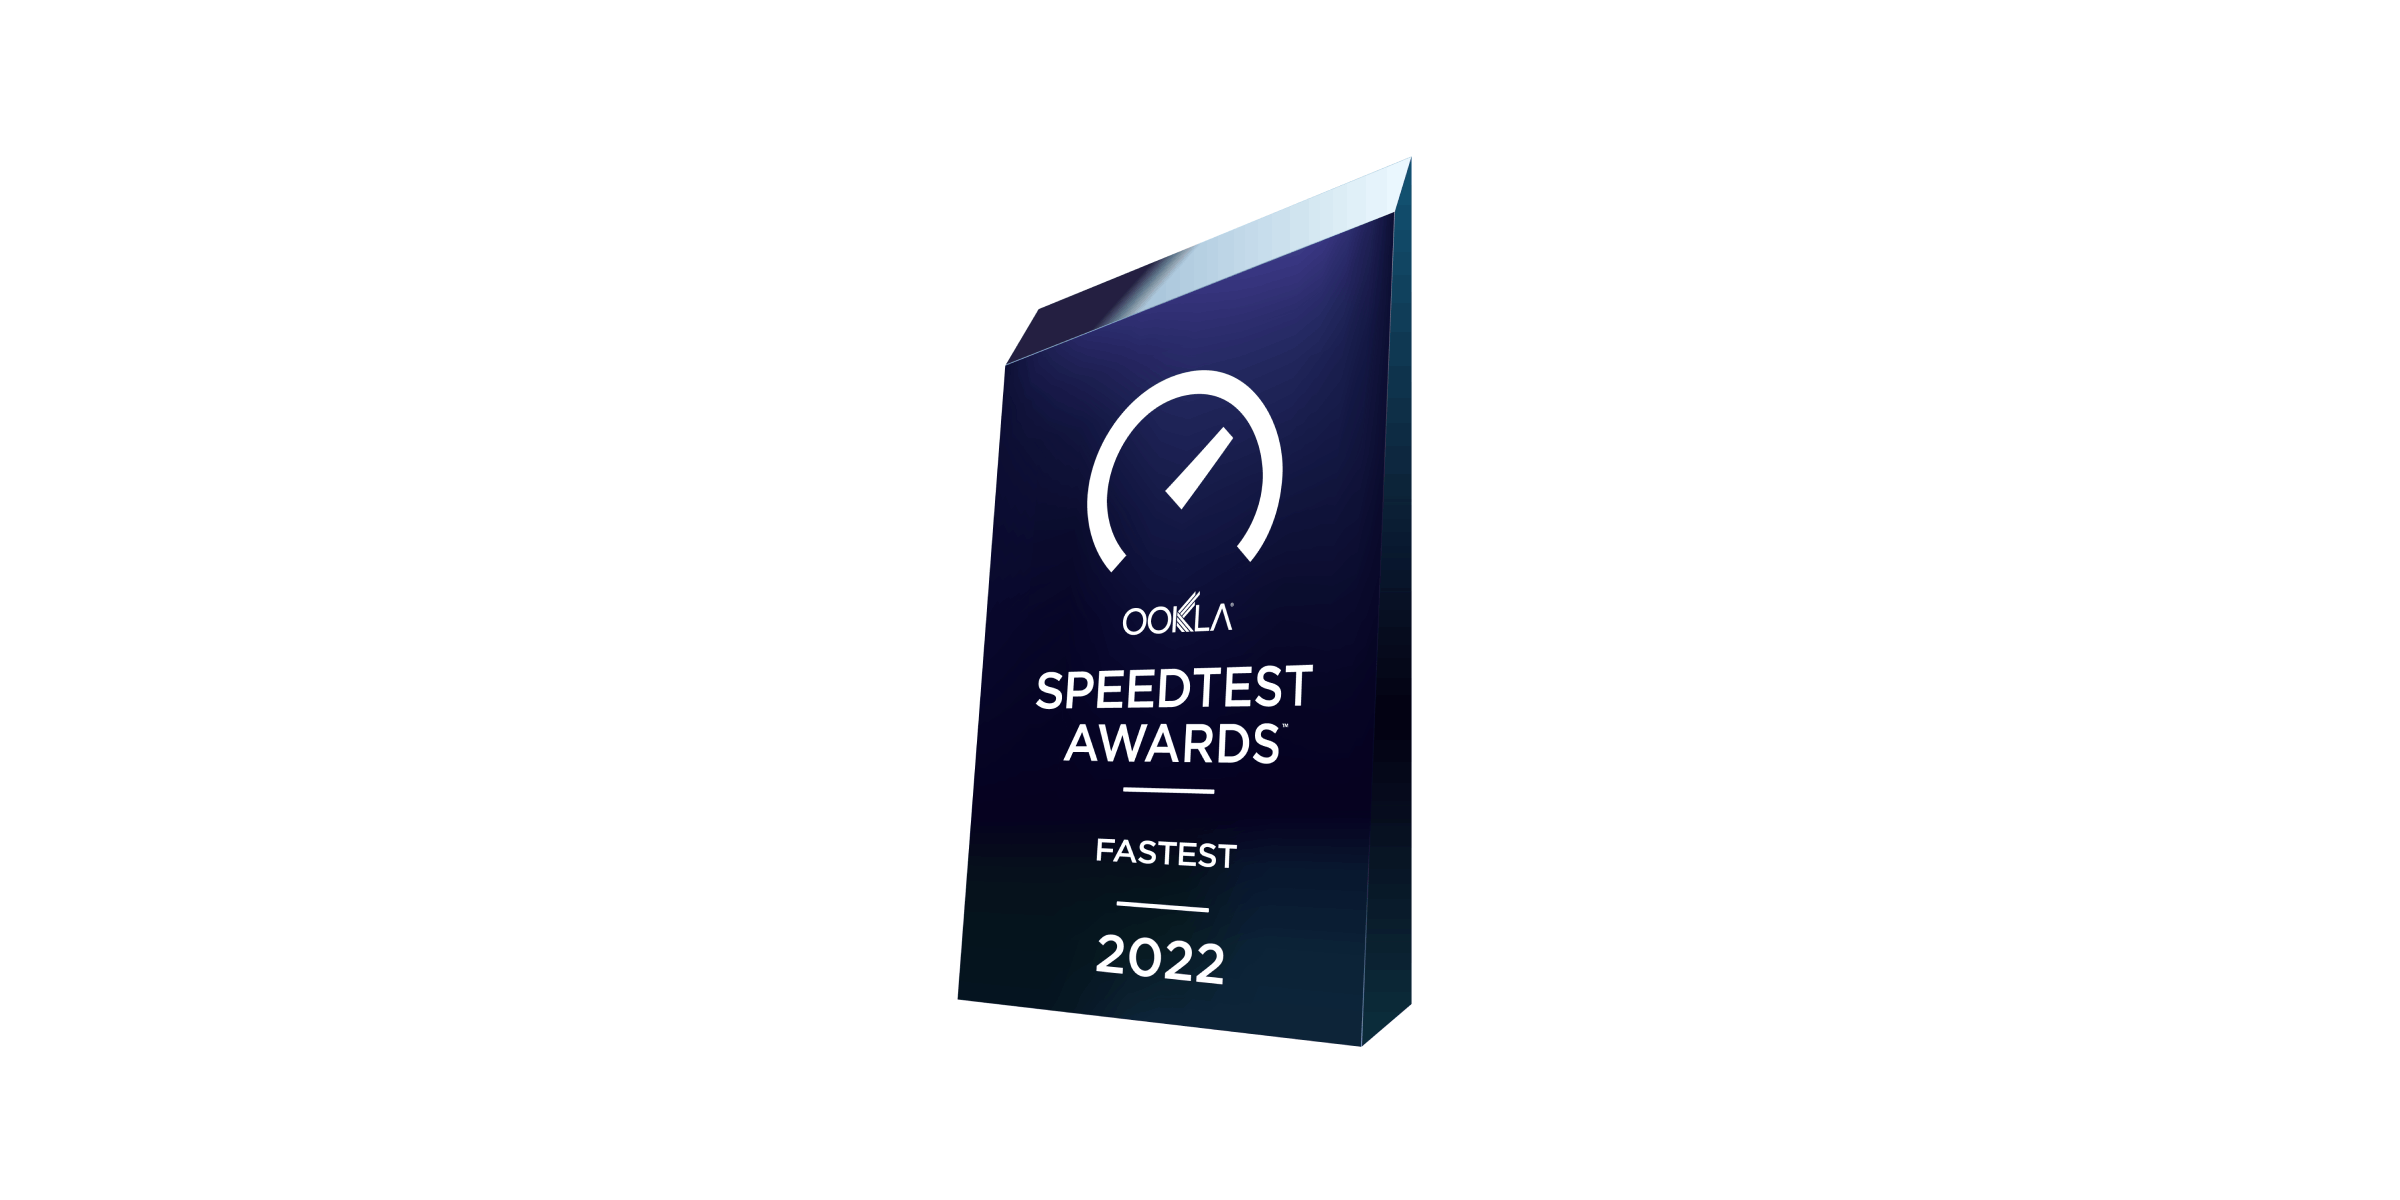 Speedtest awards fastest 2022